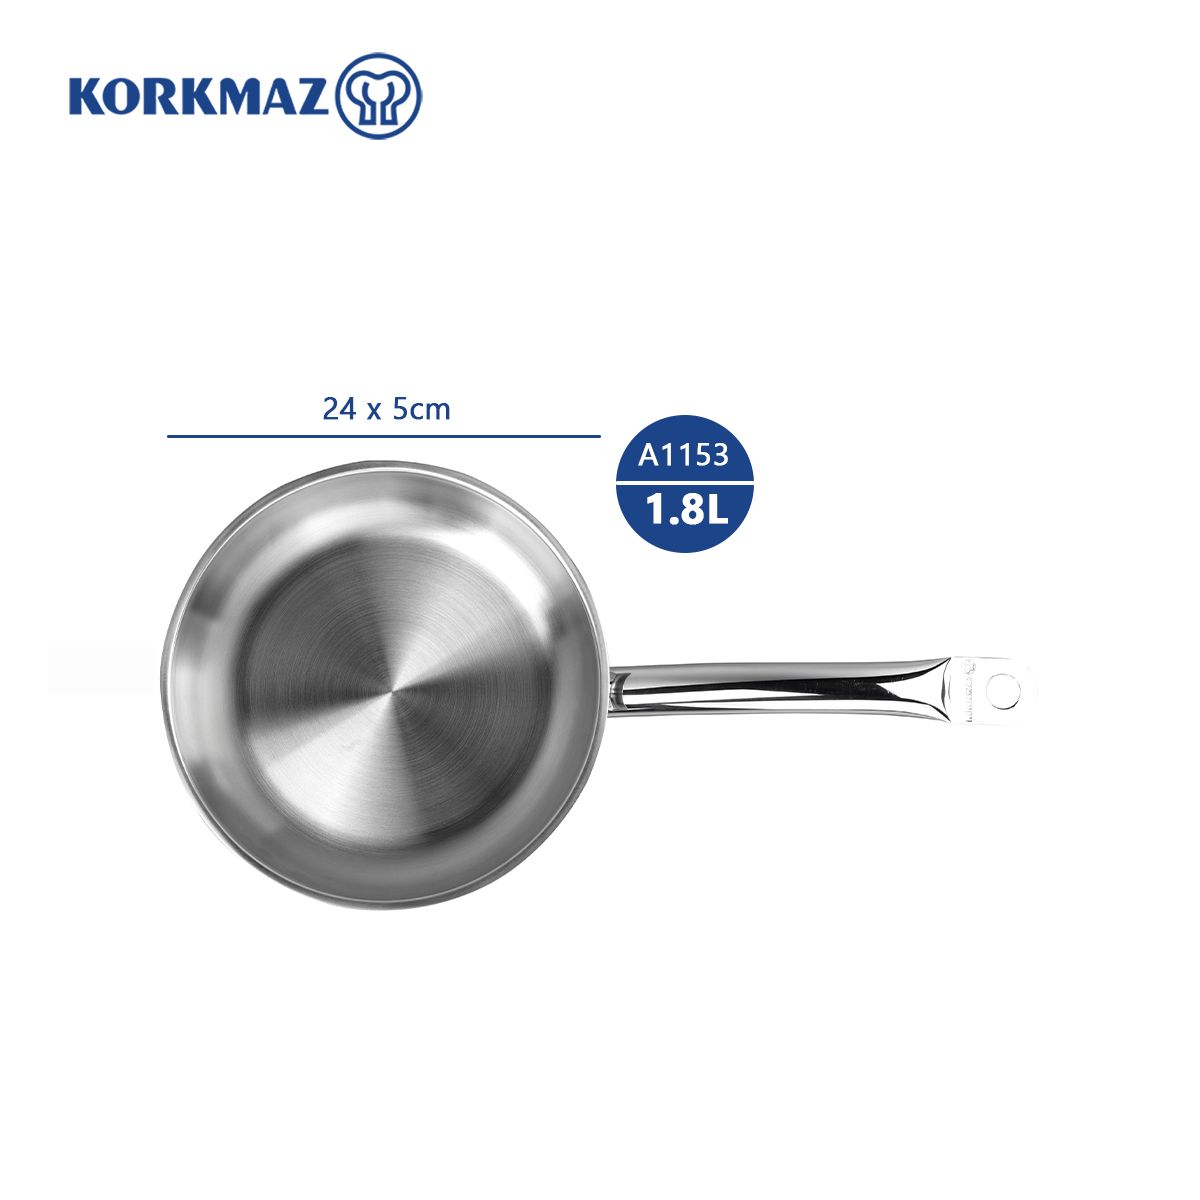  Chảo inox cao cấp Korkmaz Proline 24cm - A1153 